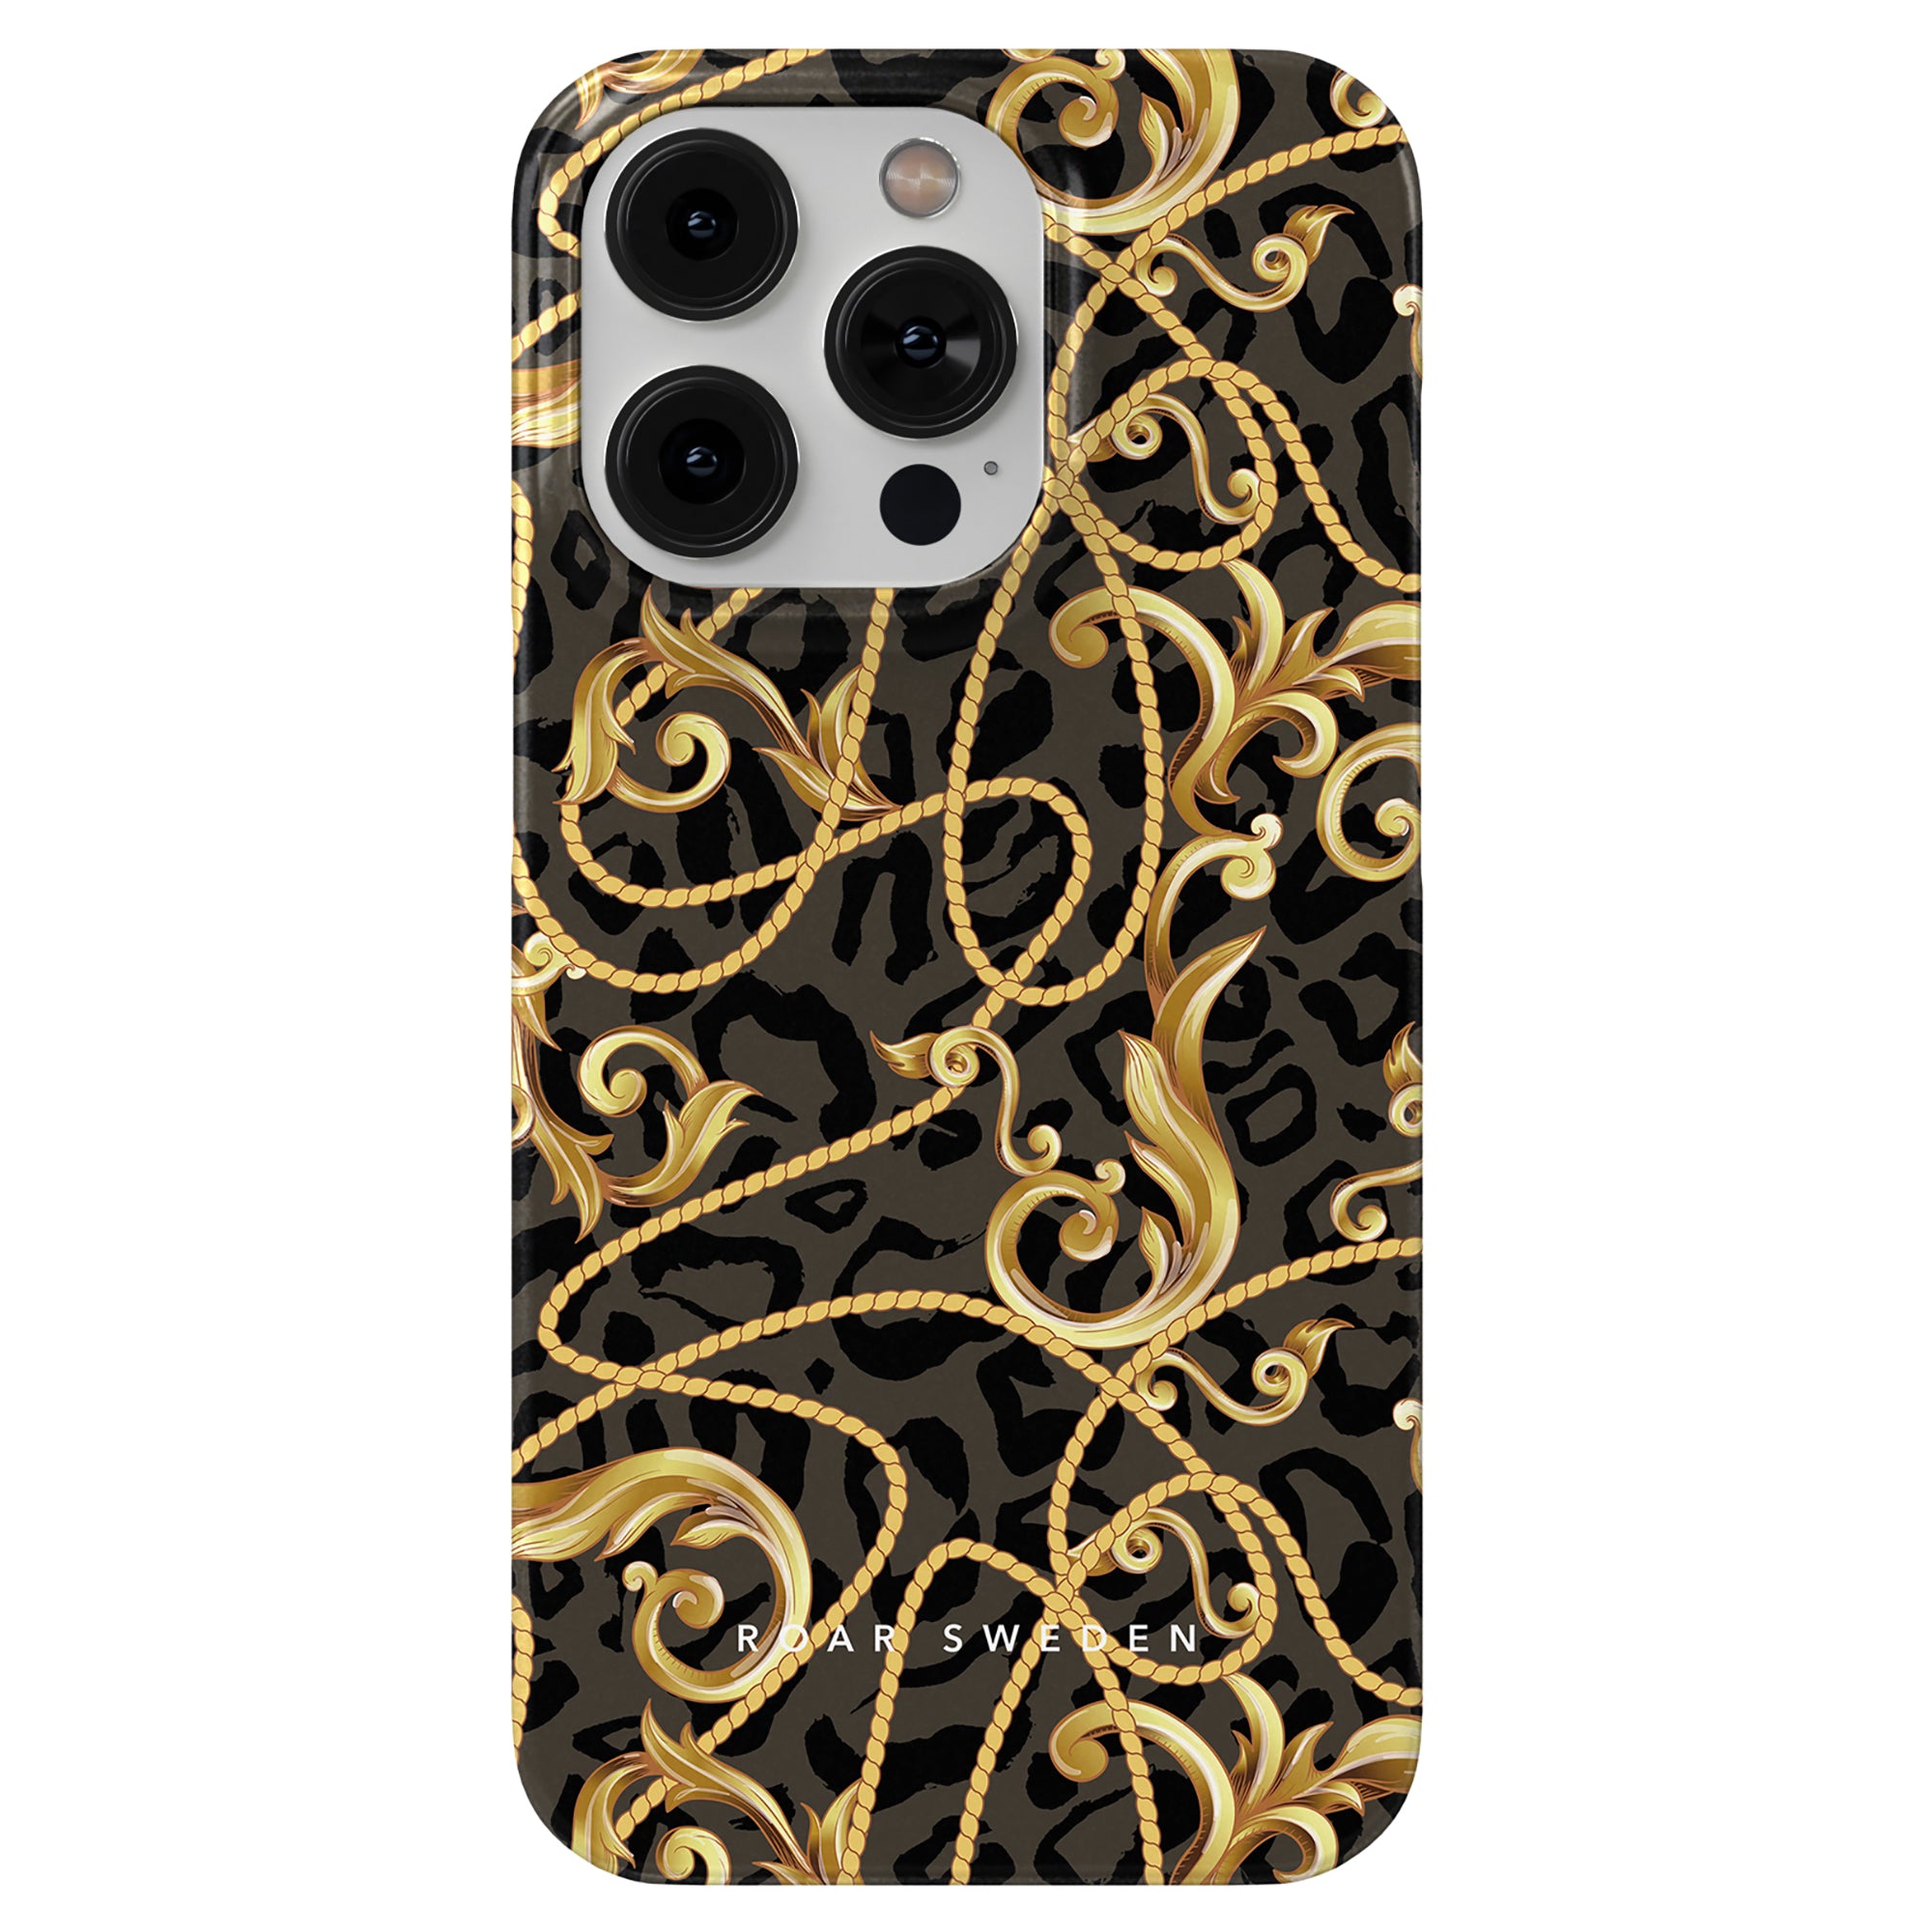 Ett svart och guld Baroque - Tunt fodral med ett utsmyckat mönster, som erbjuder robust skydd för din smartphone.